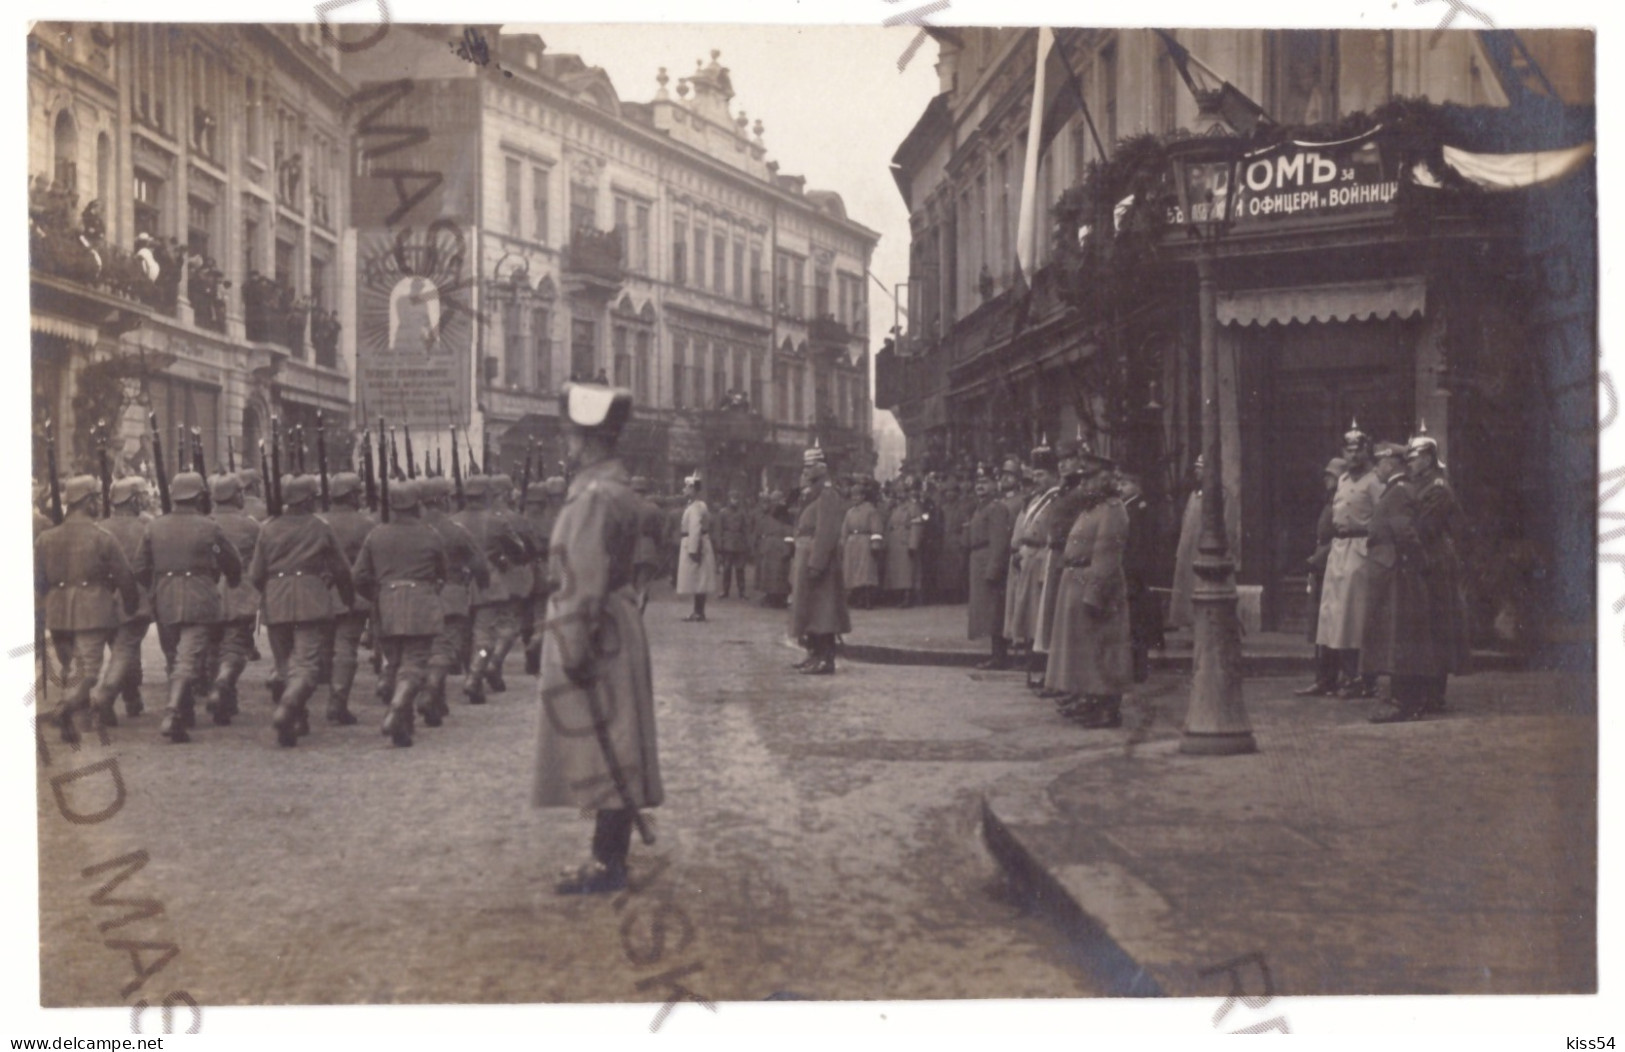 RO 33 - 19958 BUCURESTI, Military, Mackensen, Victoriei Ave. Romania - Old Postcard, Real PHOTO - Used - 1918 - Rumänien